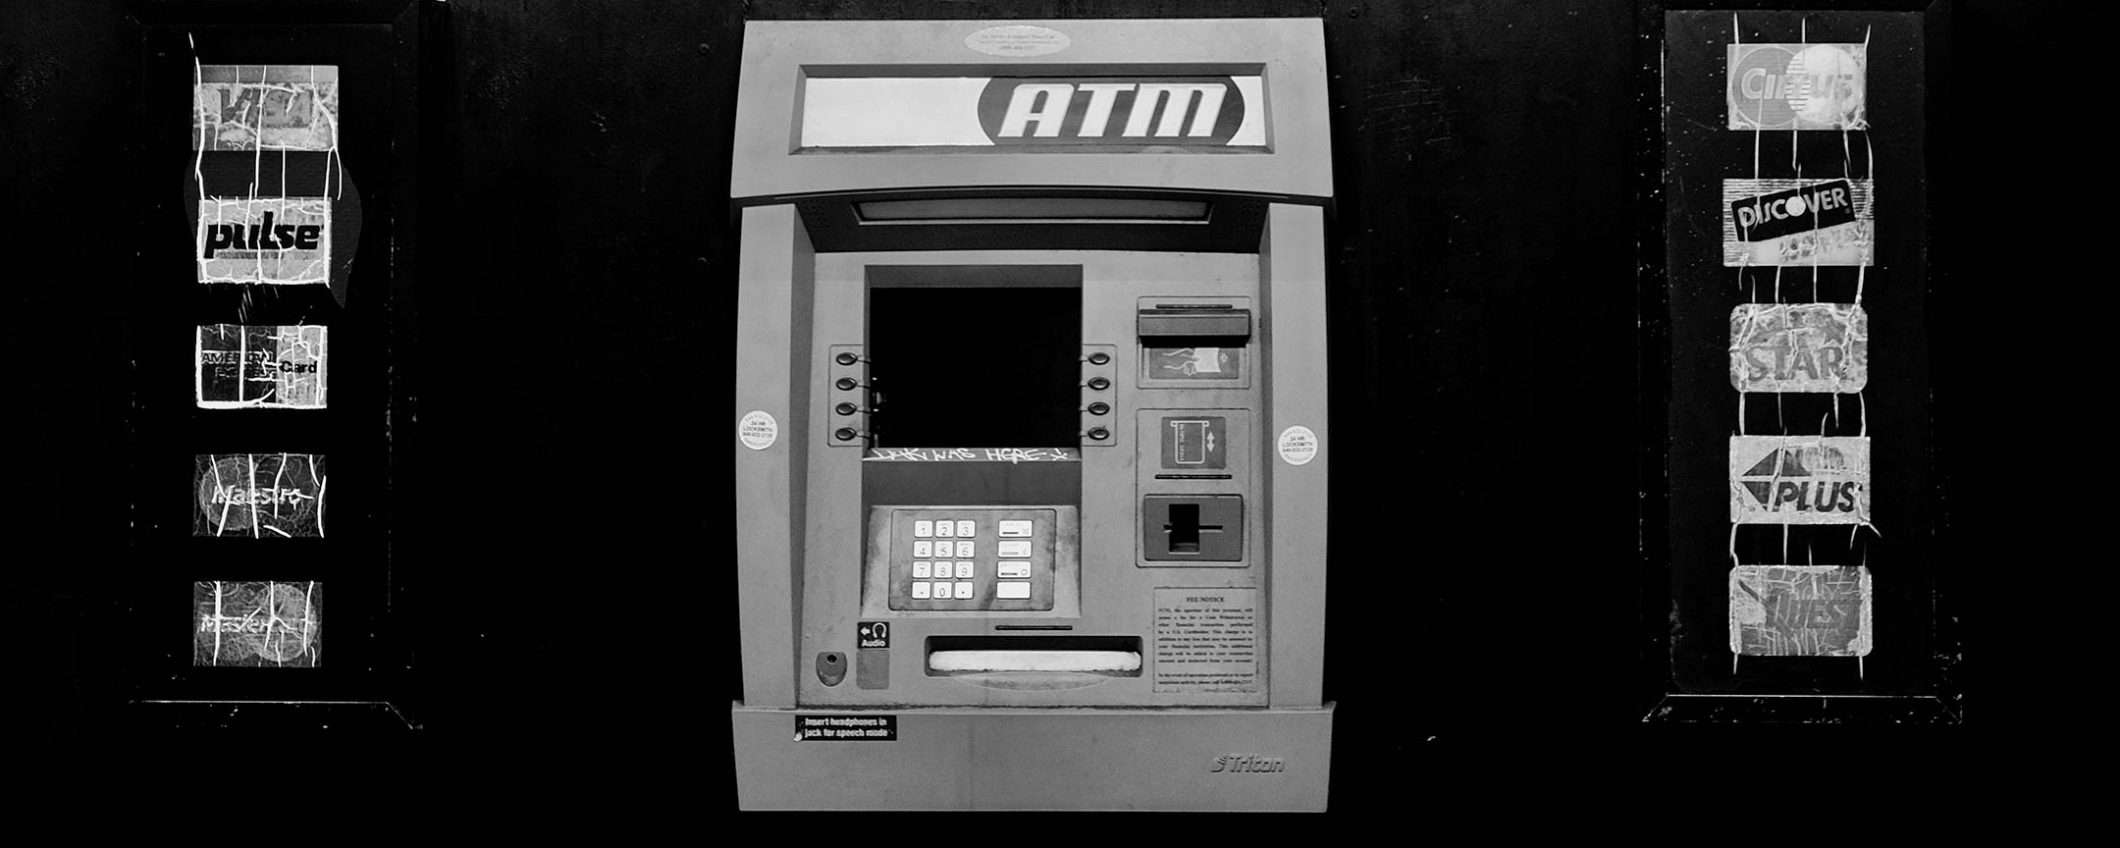 Ruba un milione a un ATM, grazie a uno script